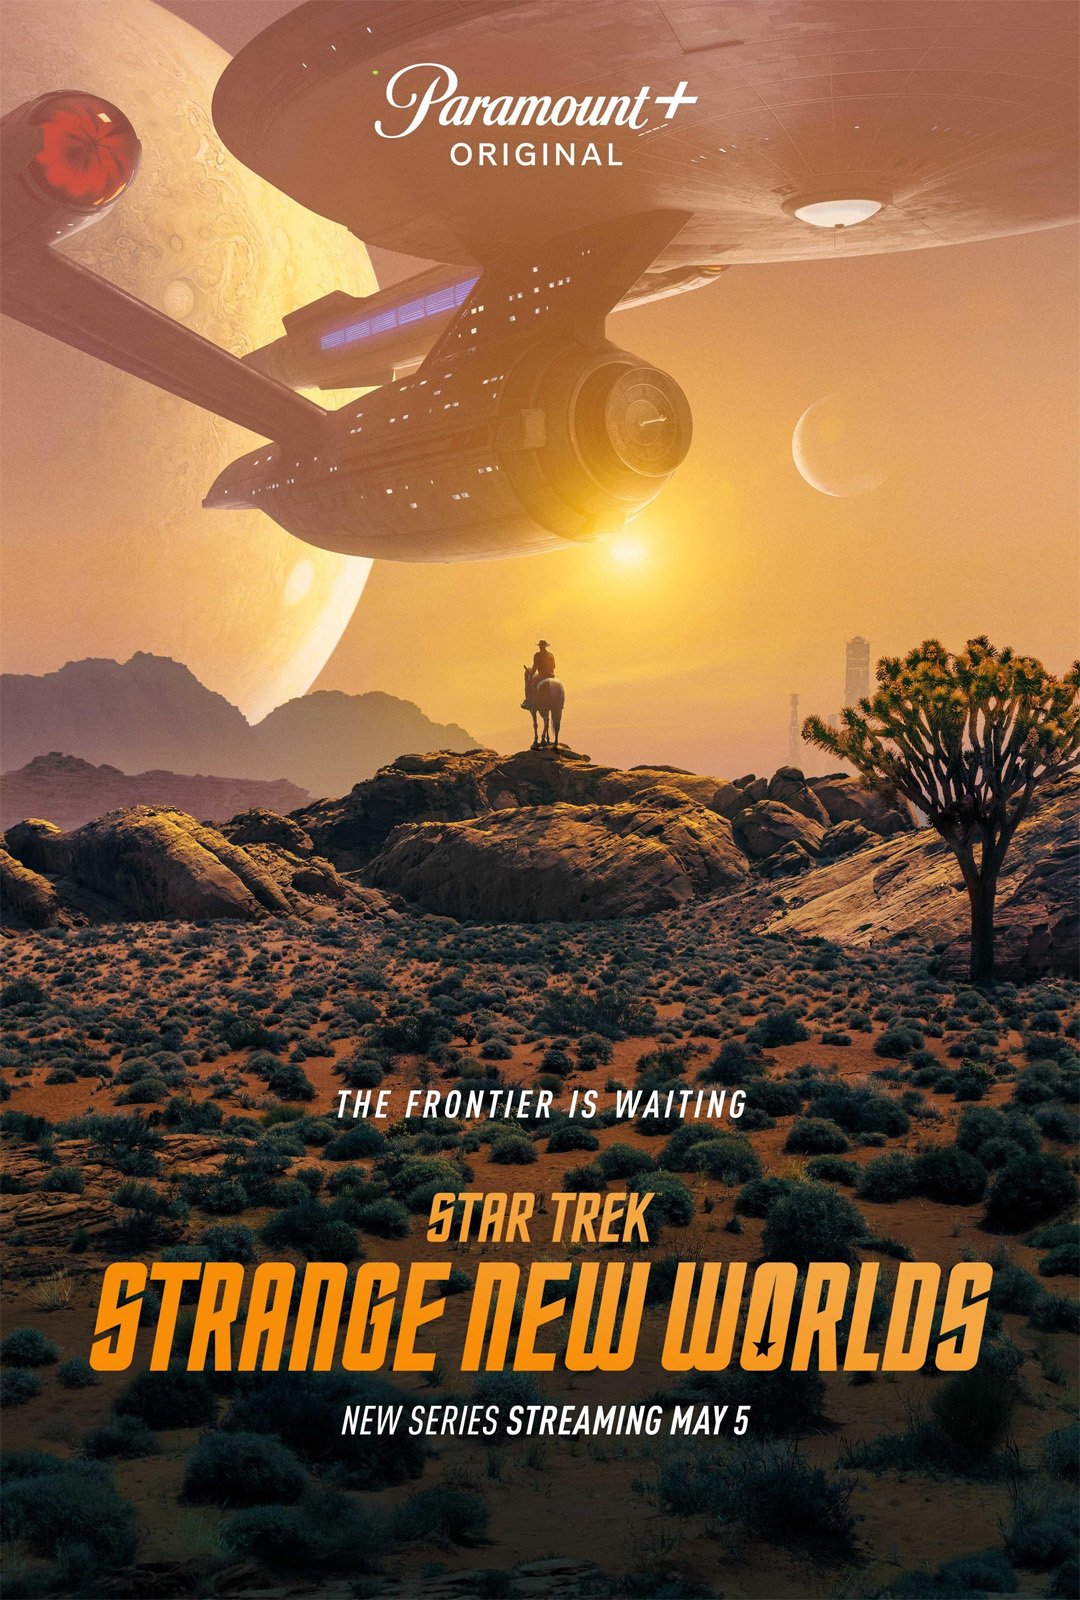 star trek strange new worlds season 2 imdb